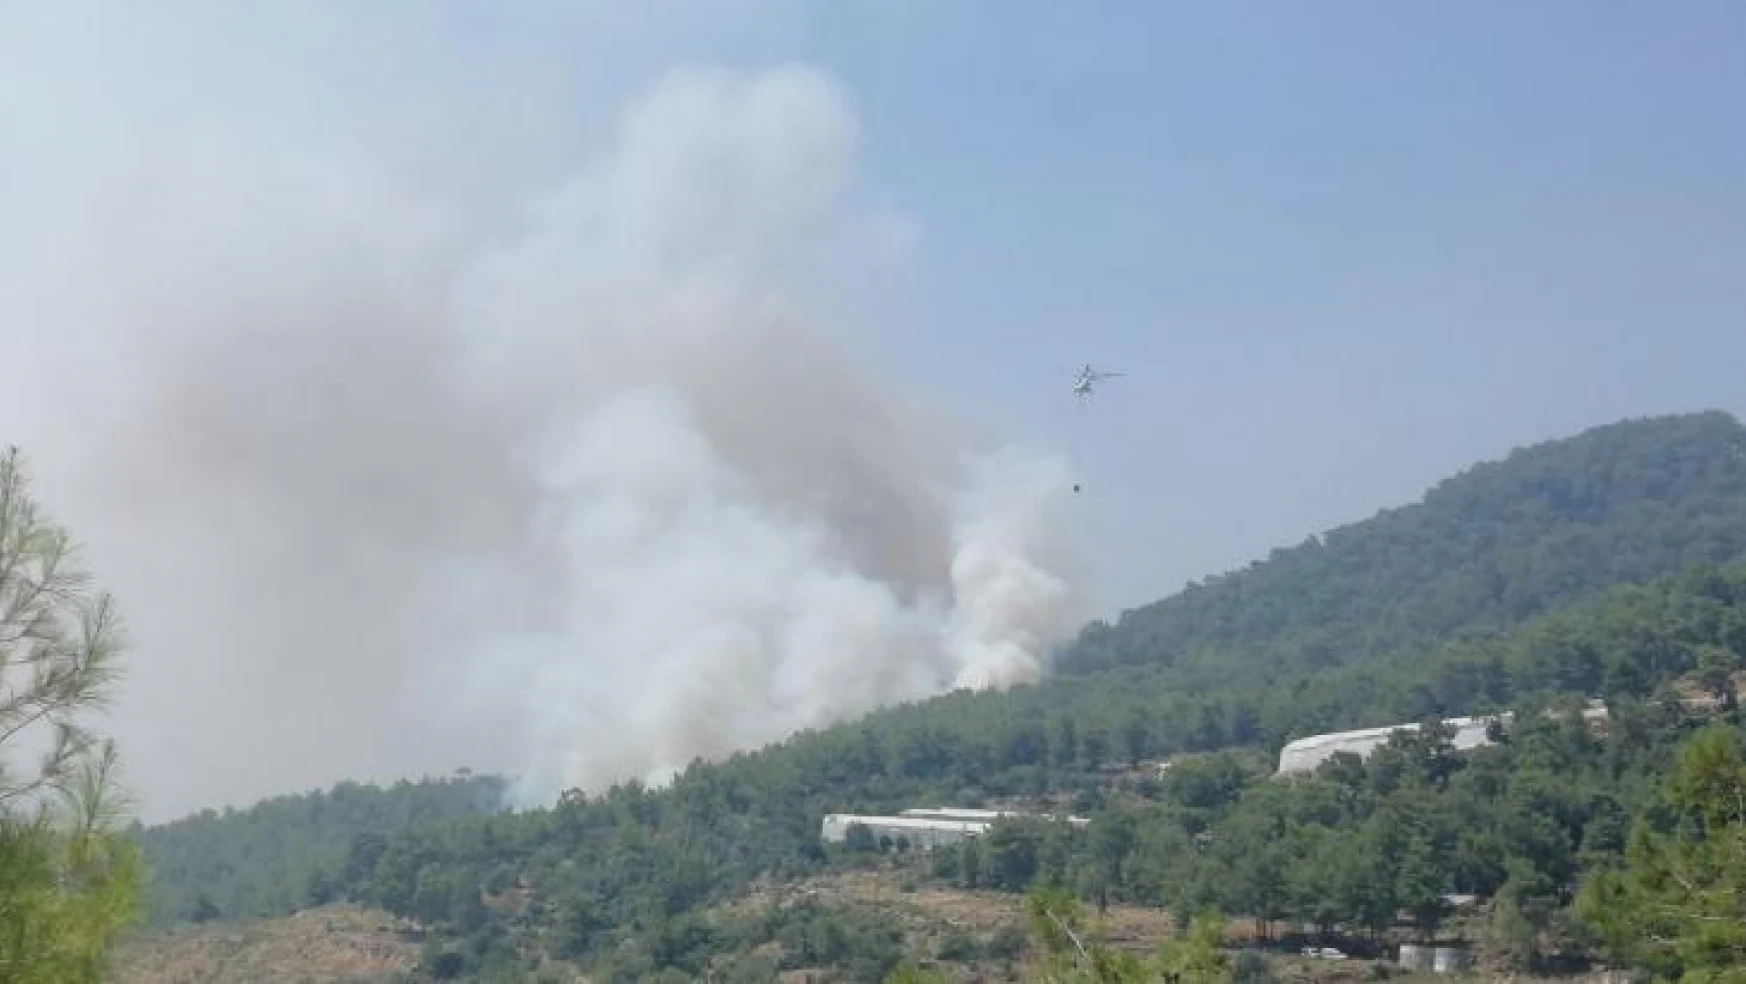 Mersin'de orman yangınına 2 uçak ve 5 helikopterle müdahale ediliyor